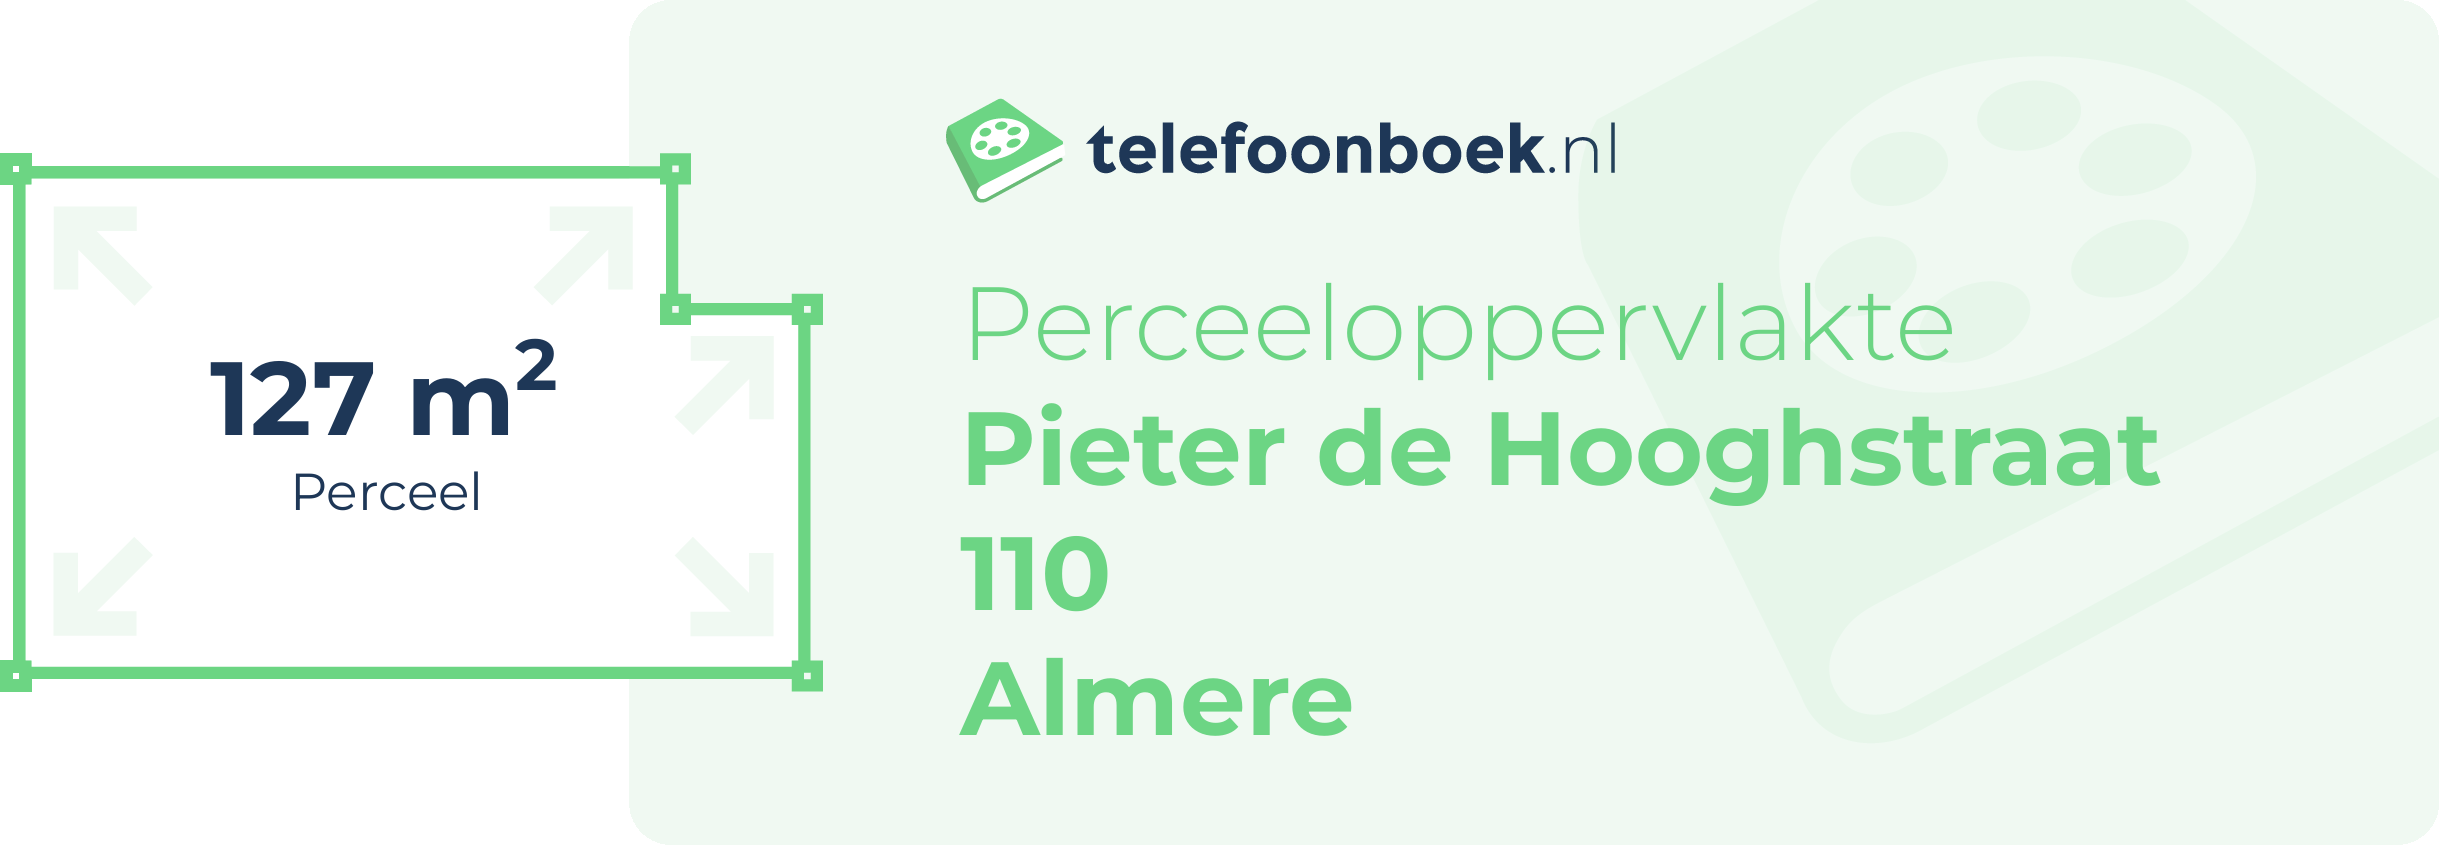 Perceeloppervlakte Pieter De Hooghstraat 110 Almere